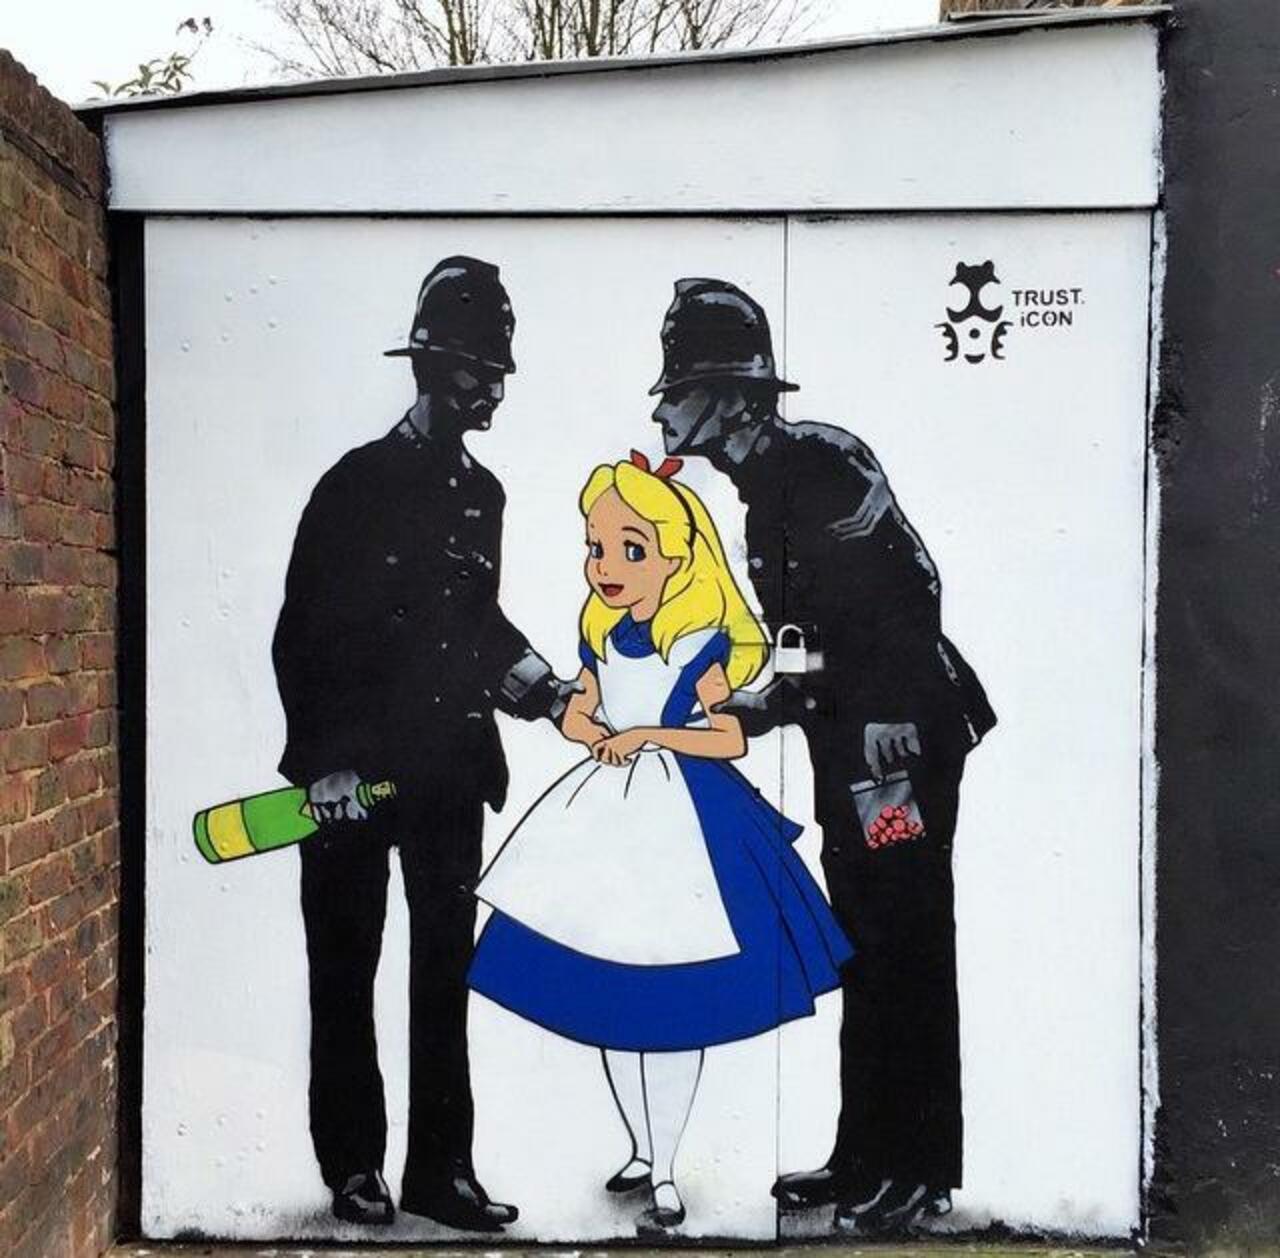 New Street Art by iCON in Camden, London 

#art #arte #graffiti #streetart http://t.co/55F2AuoHOO